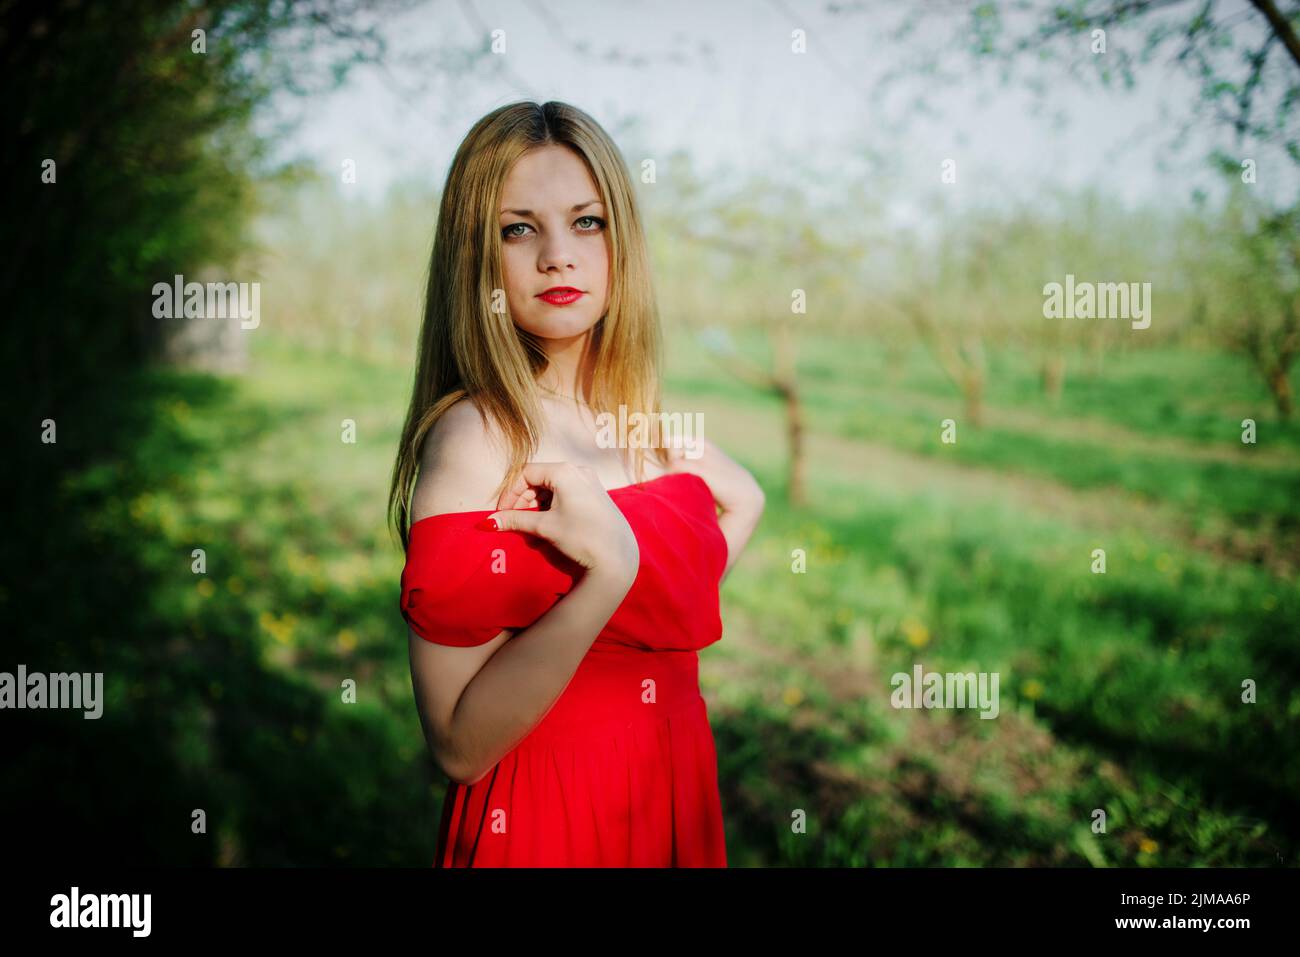 Portrait of light hair girl on red dress background spring garden. Stock Photo